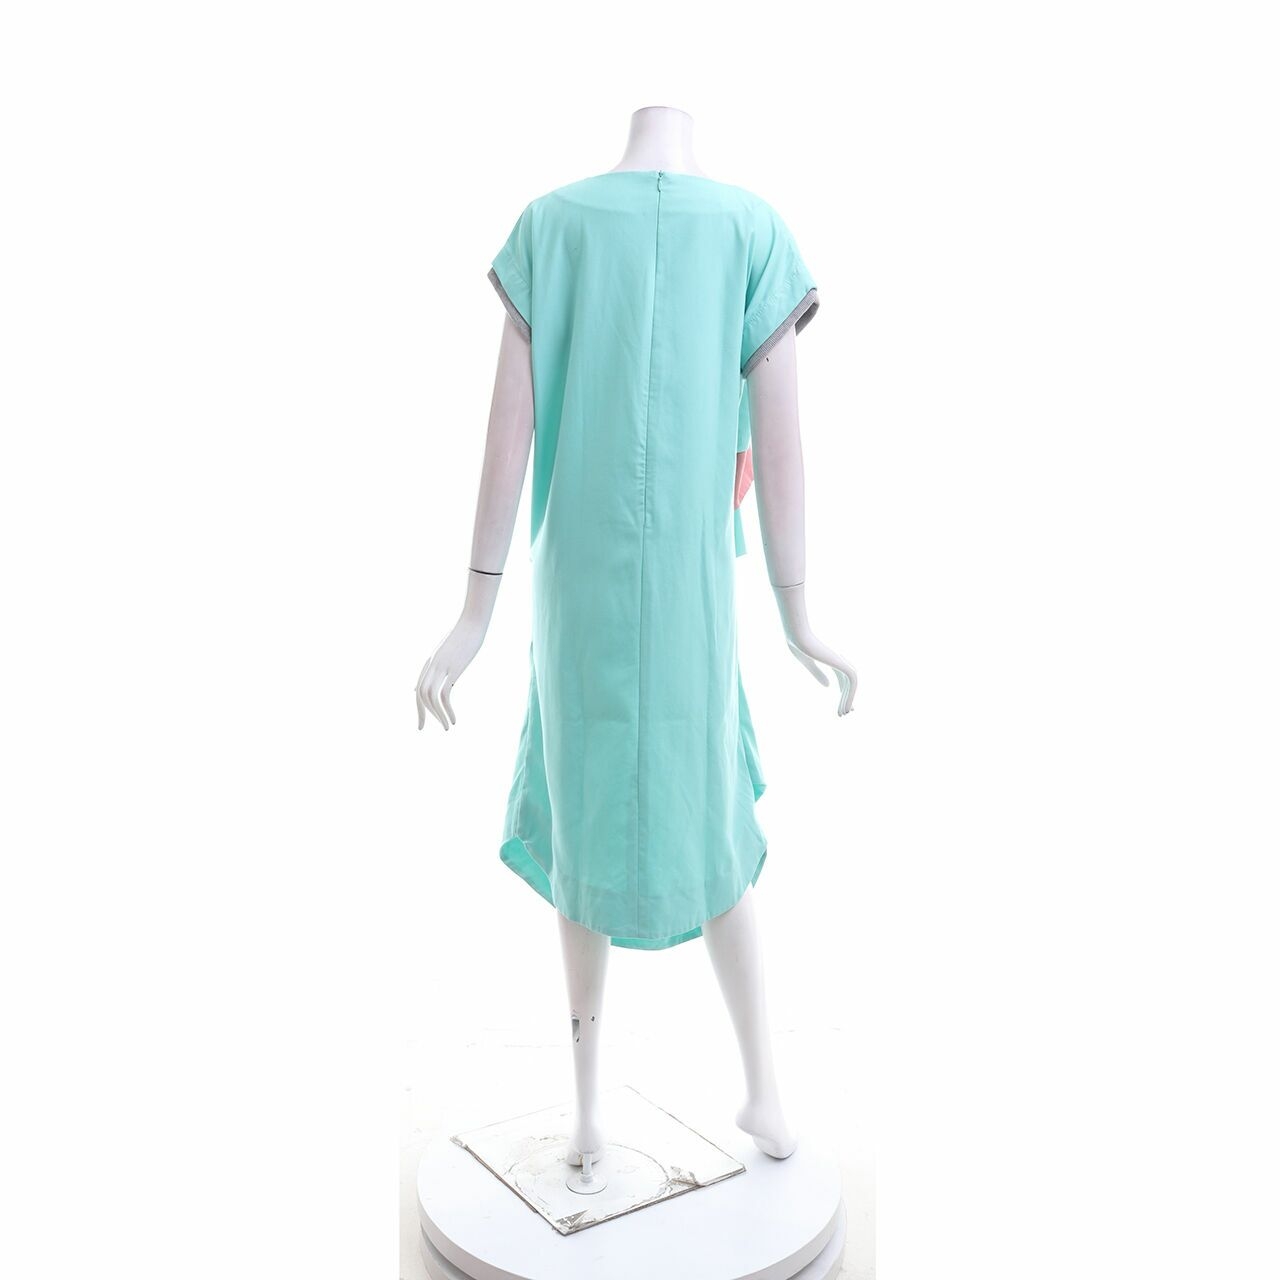 Oline Workrobe Green Midi Dress